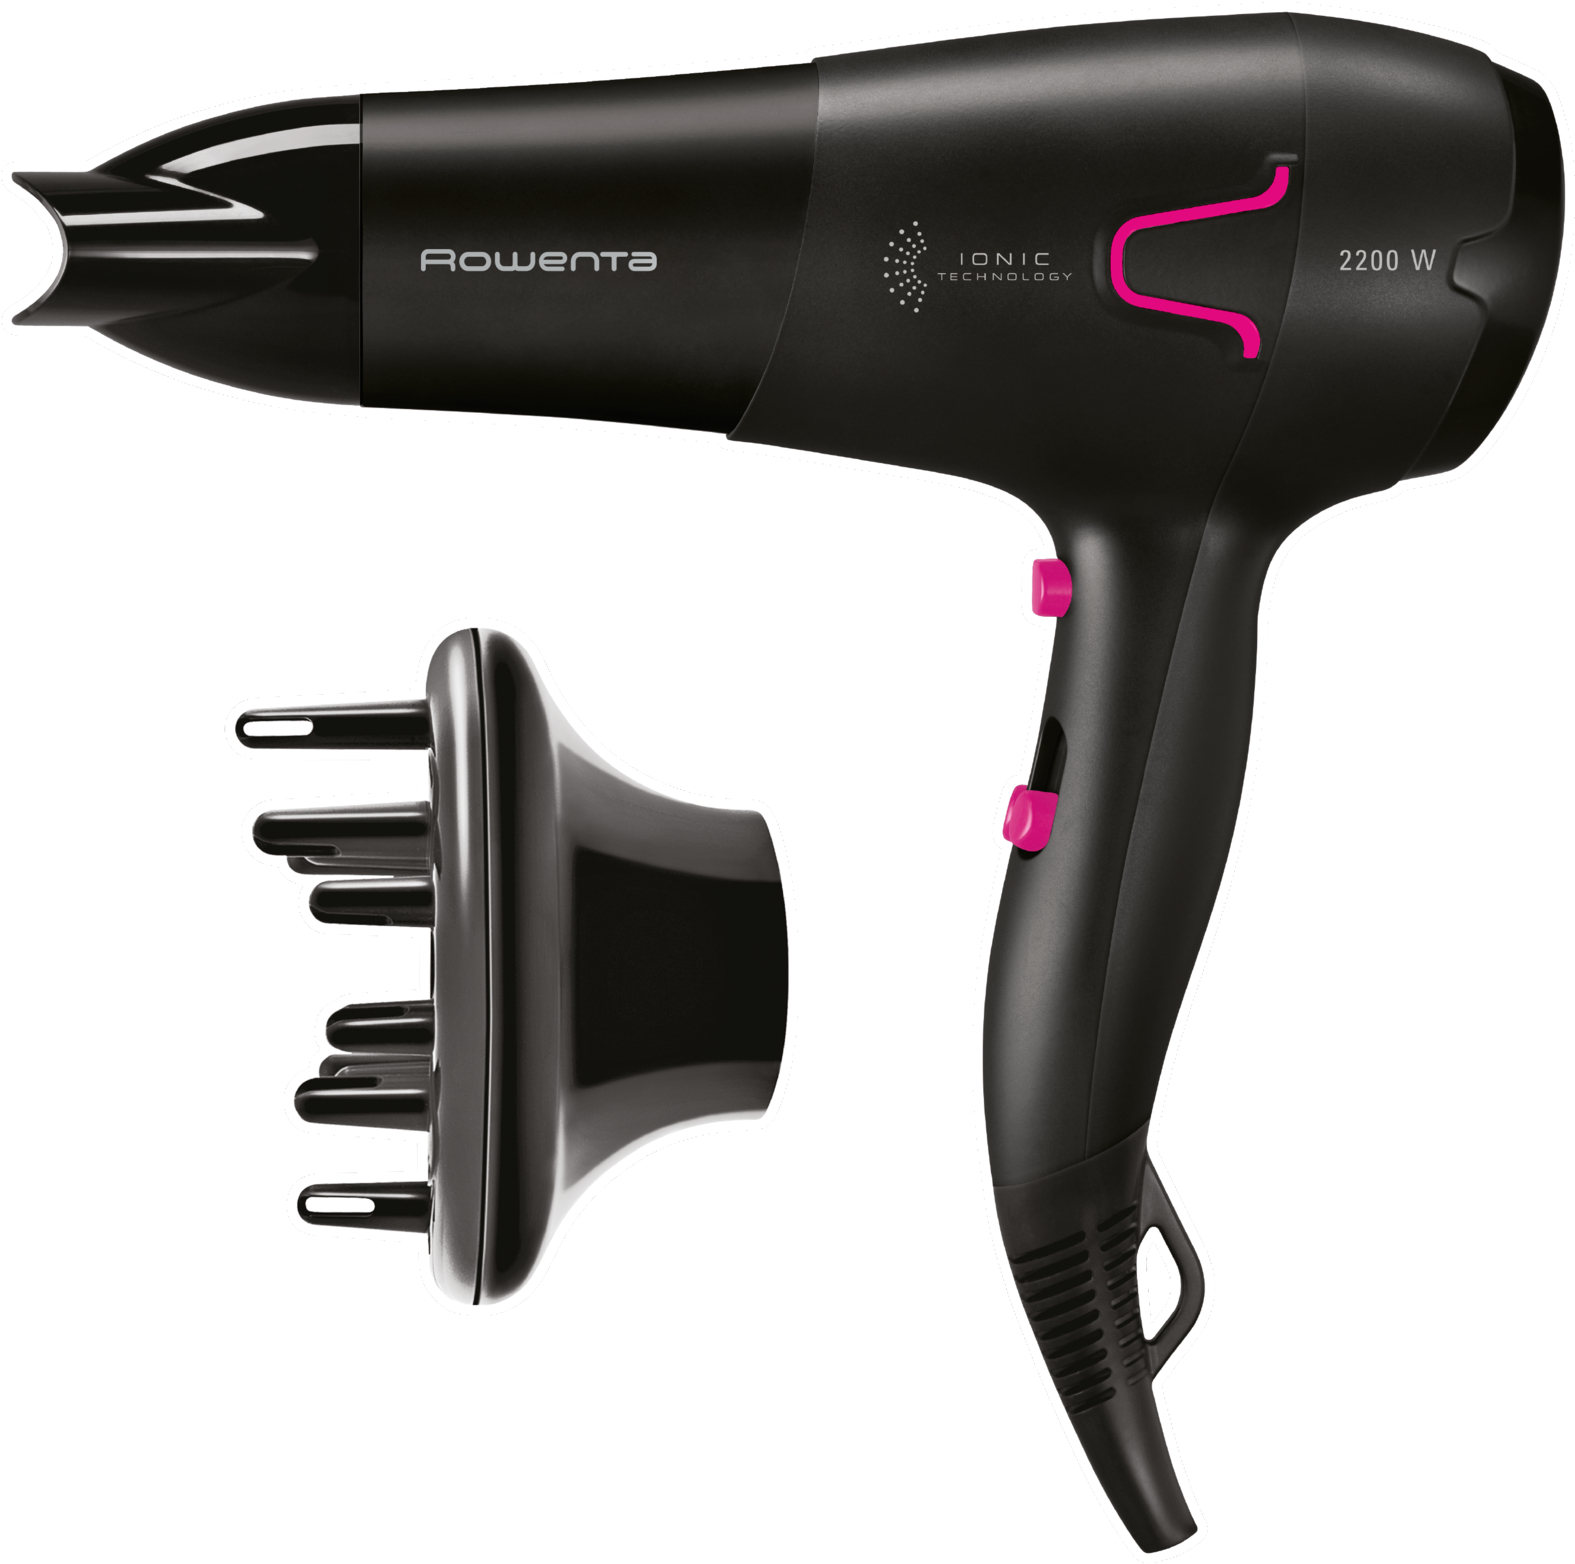 Фен для волос Power Pro Ionic CV5623F0 Rowenta Power Pro Ionic CV5623F0, цвет черный/розовый